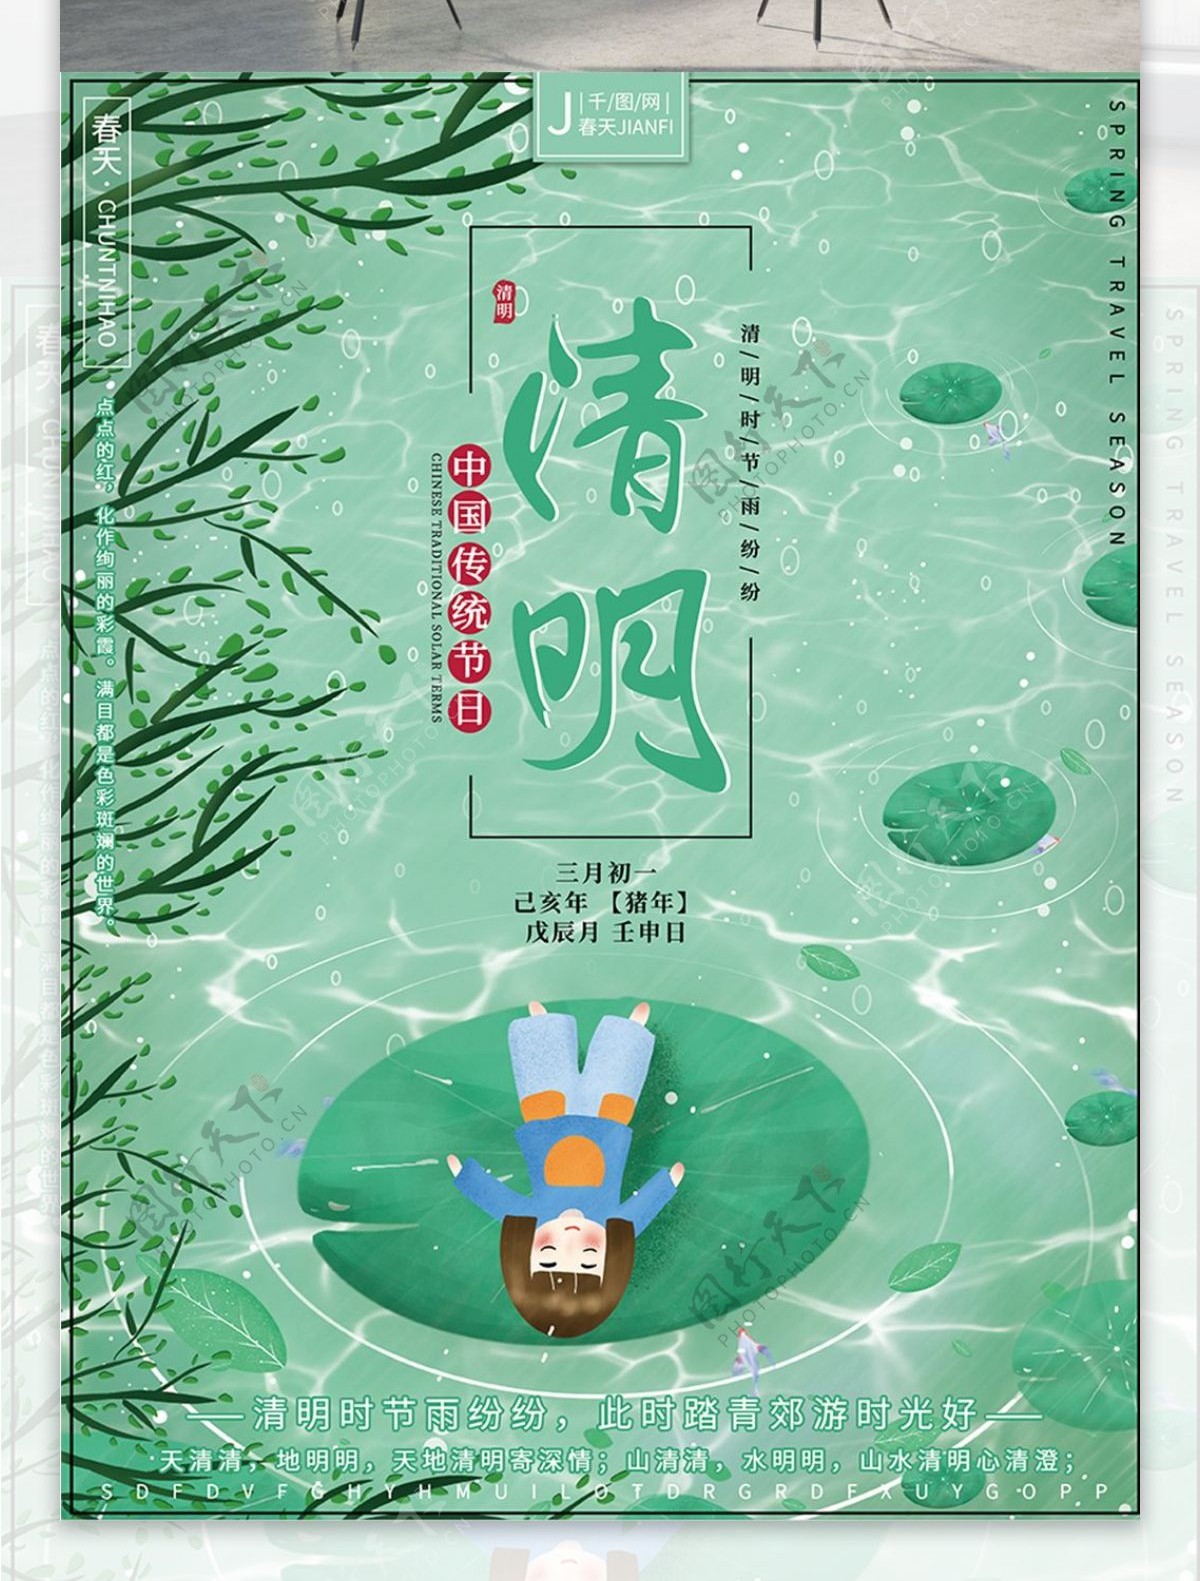 原创插画清新自然传统节日清明郊游节日海报